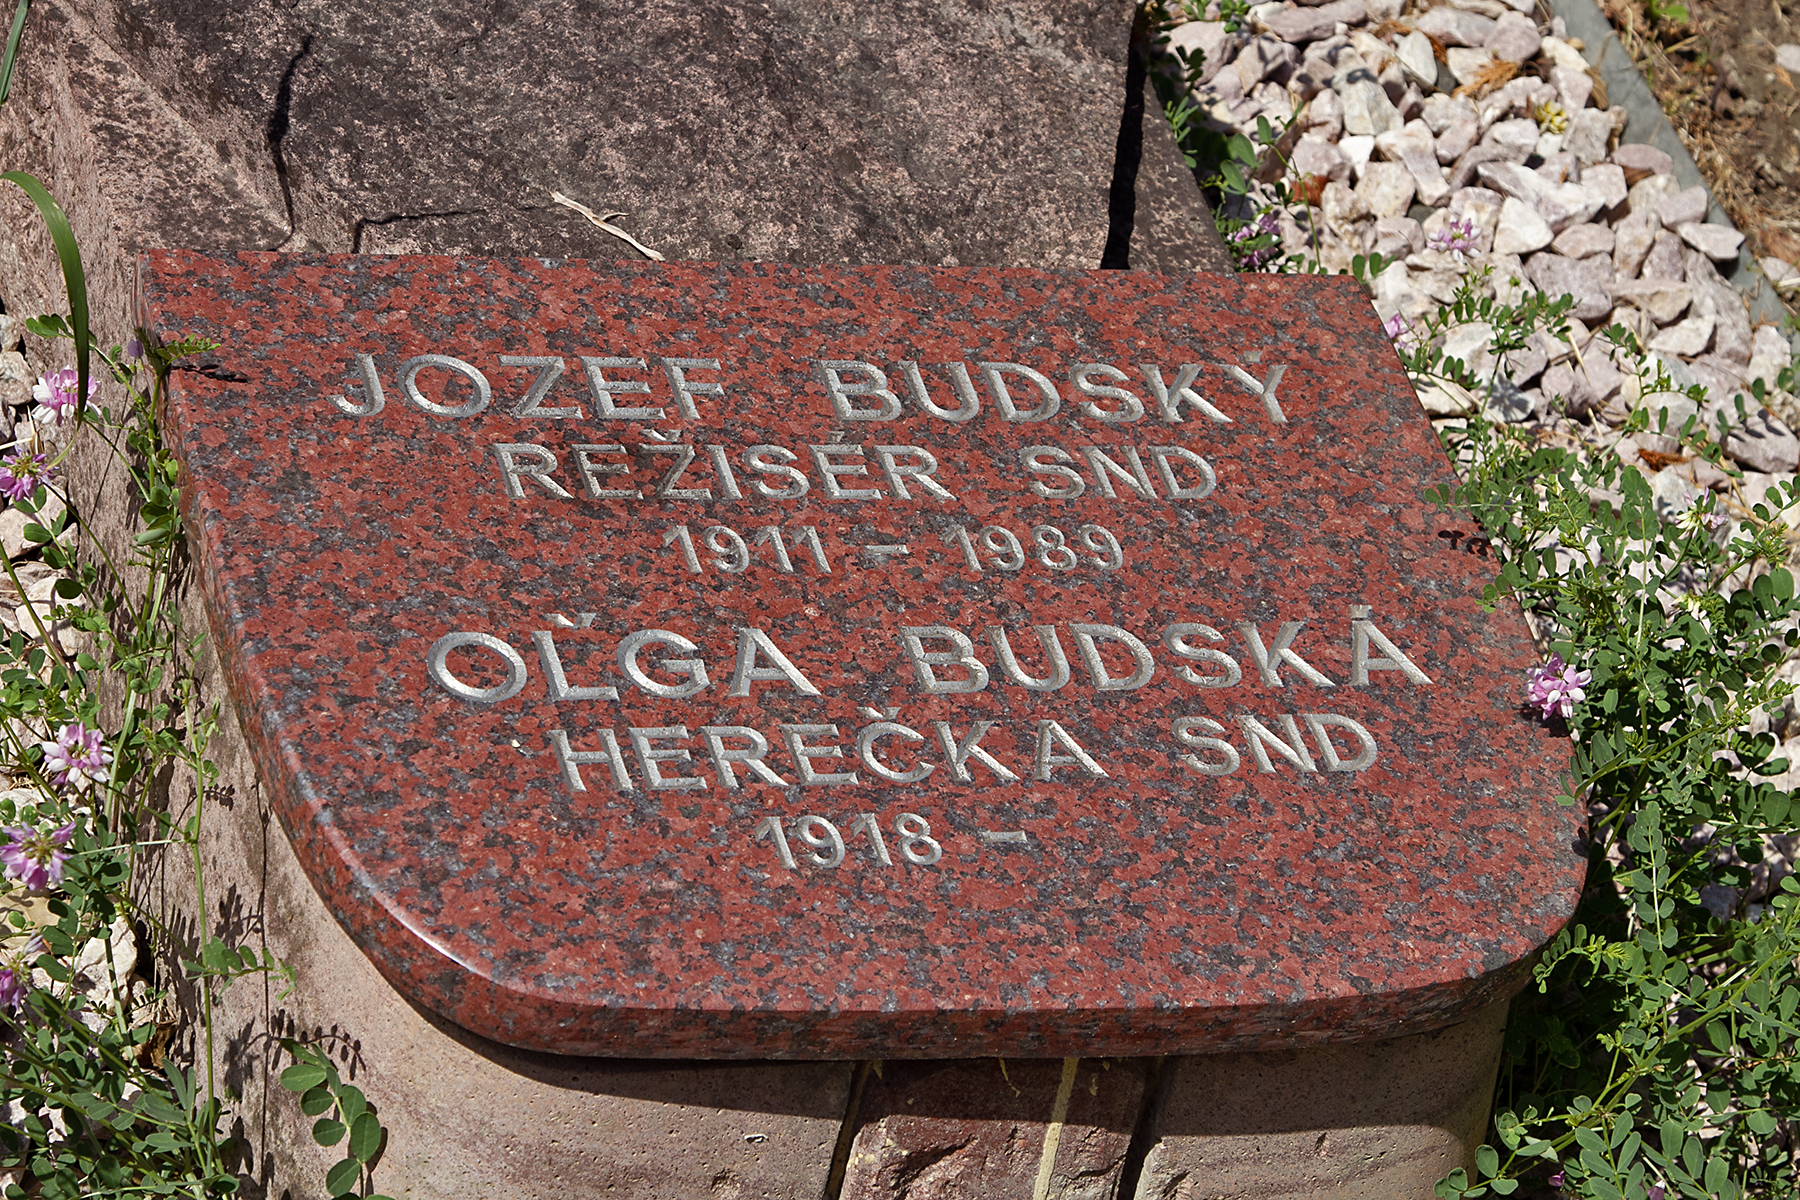 Jozef Budský